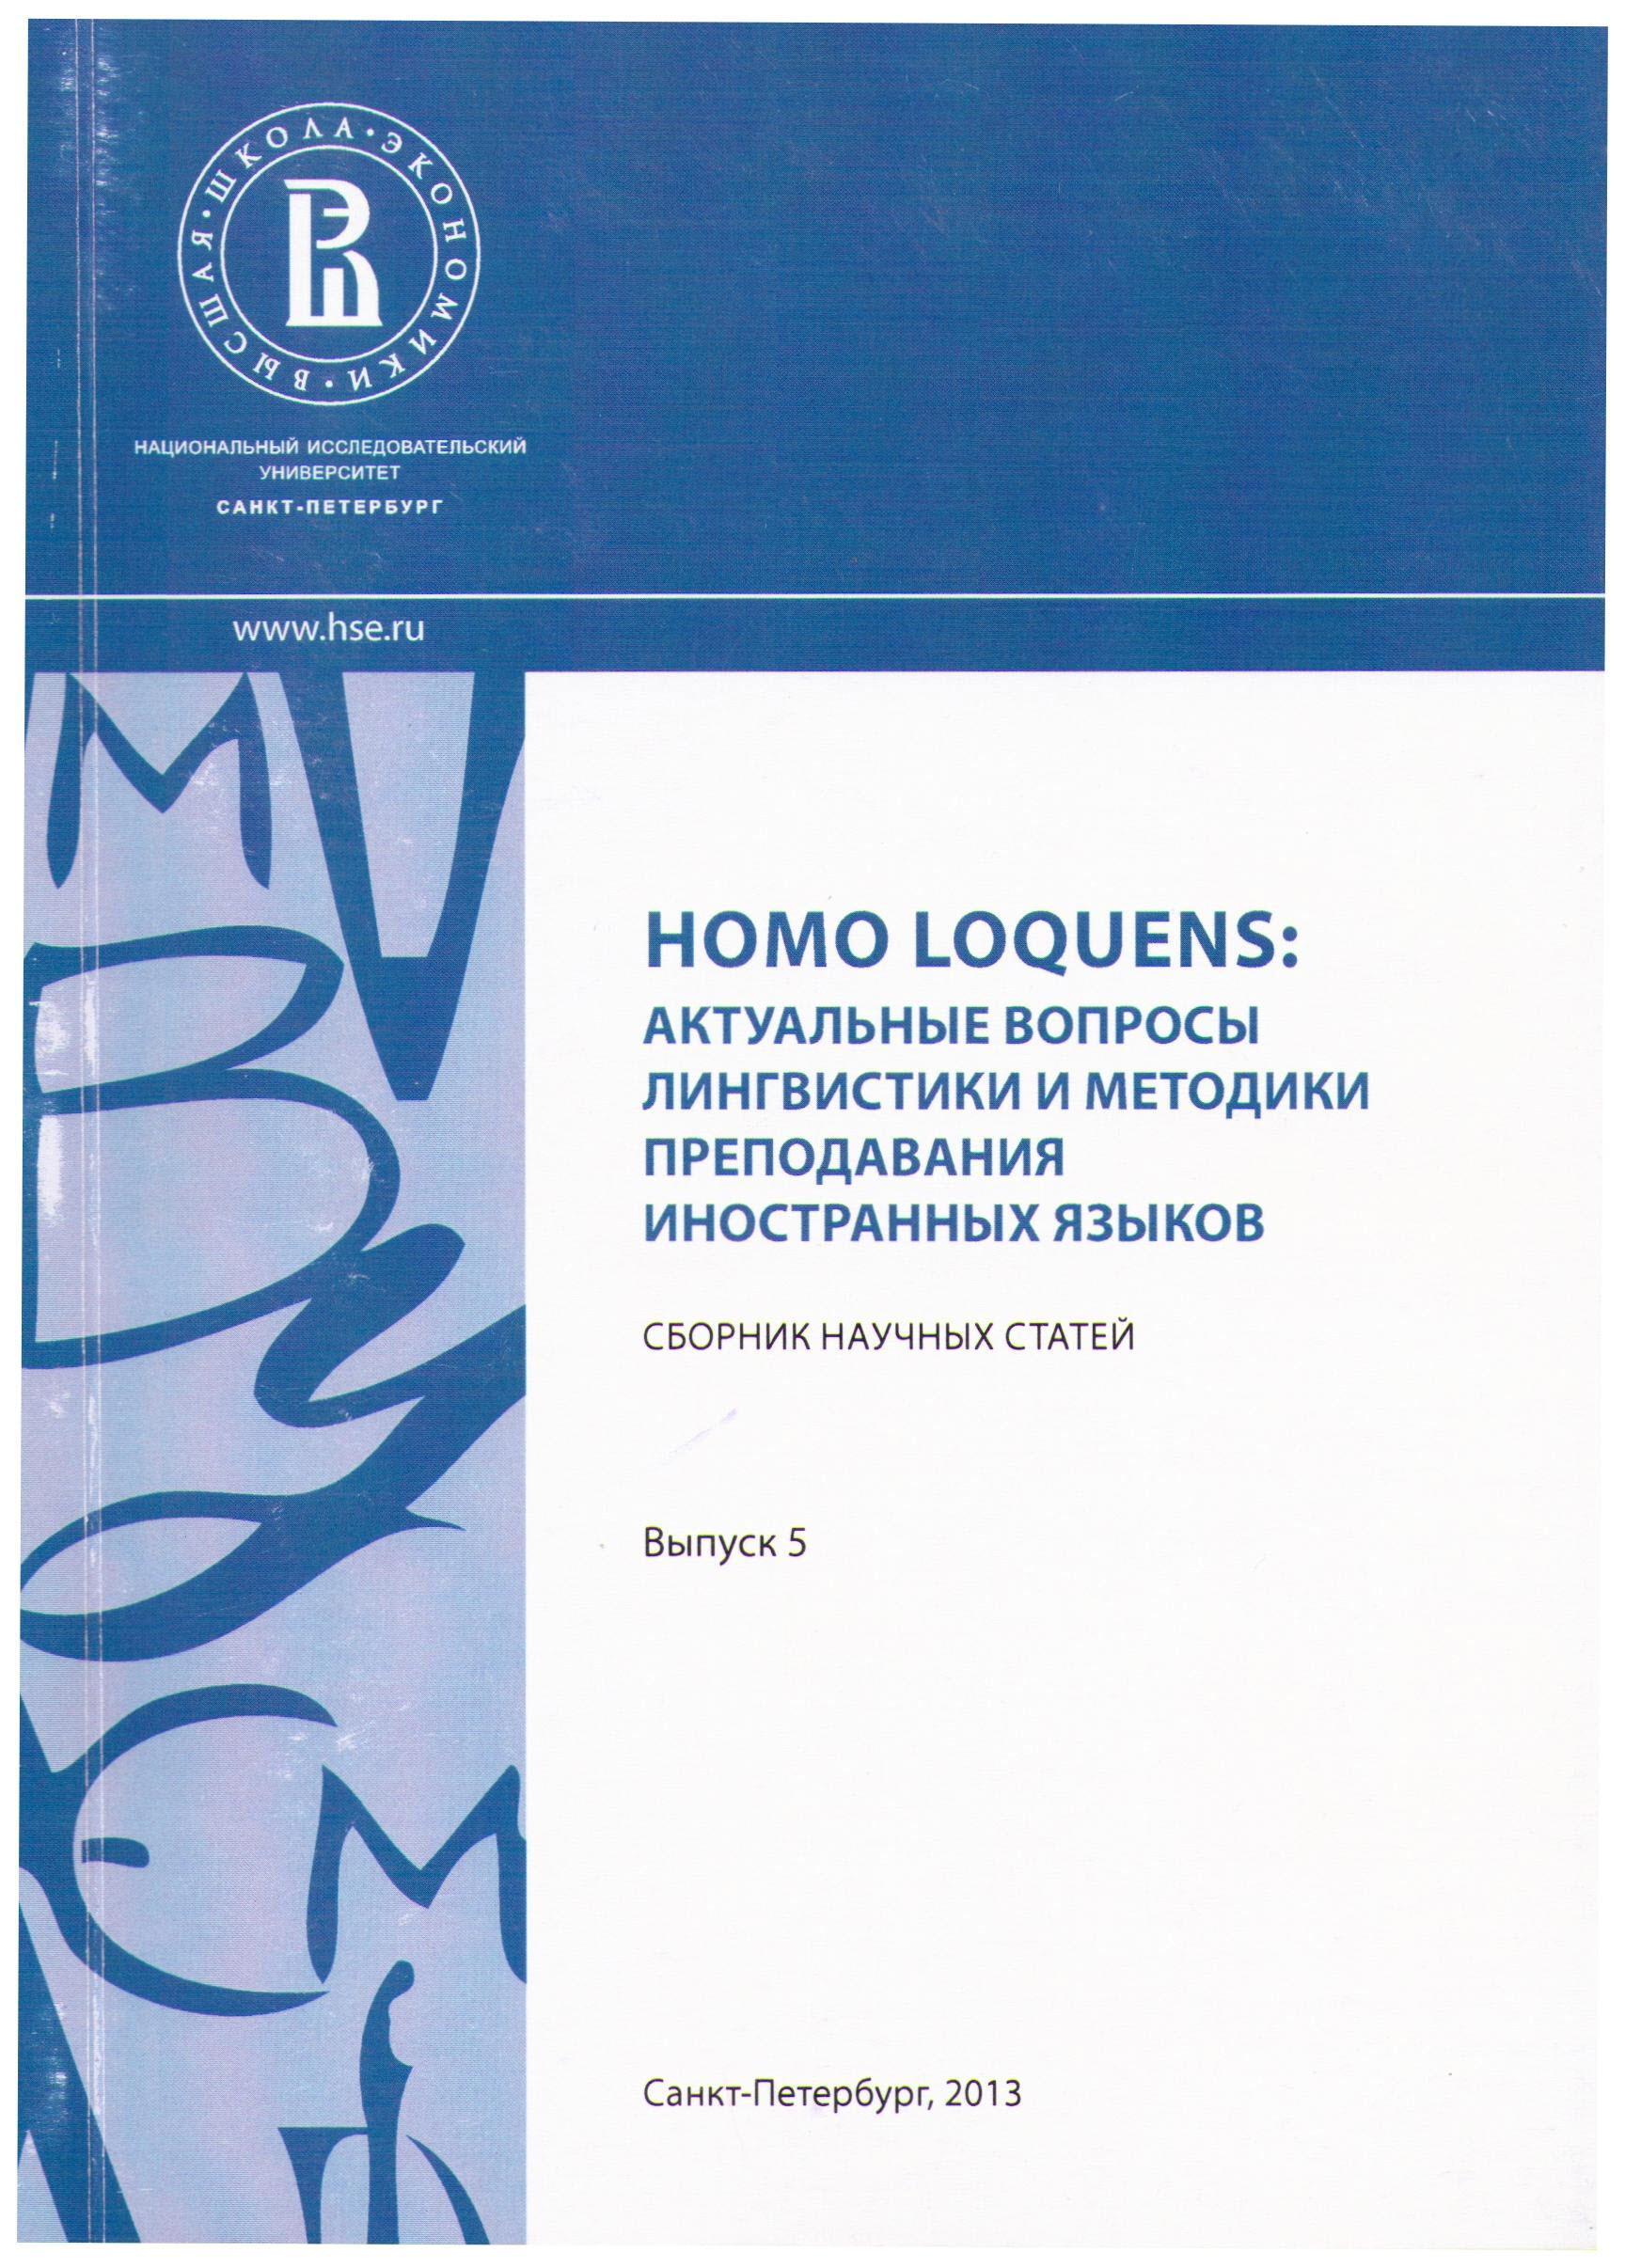 Homo Loquens: Актуальные вопросы лингвистики и методики преподавания иностранных языков (2013)